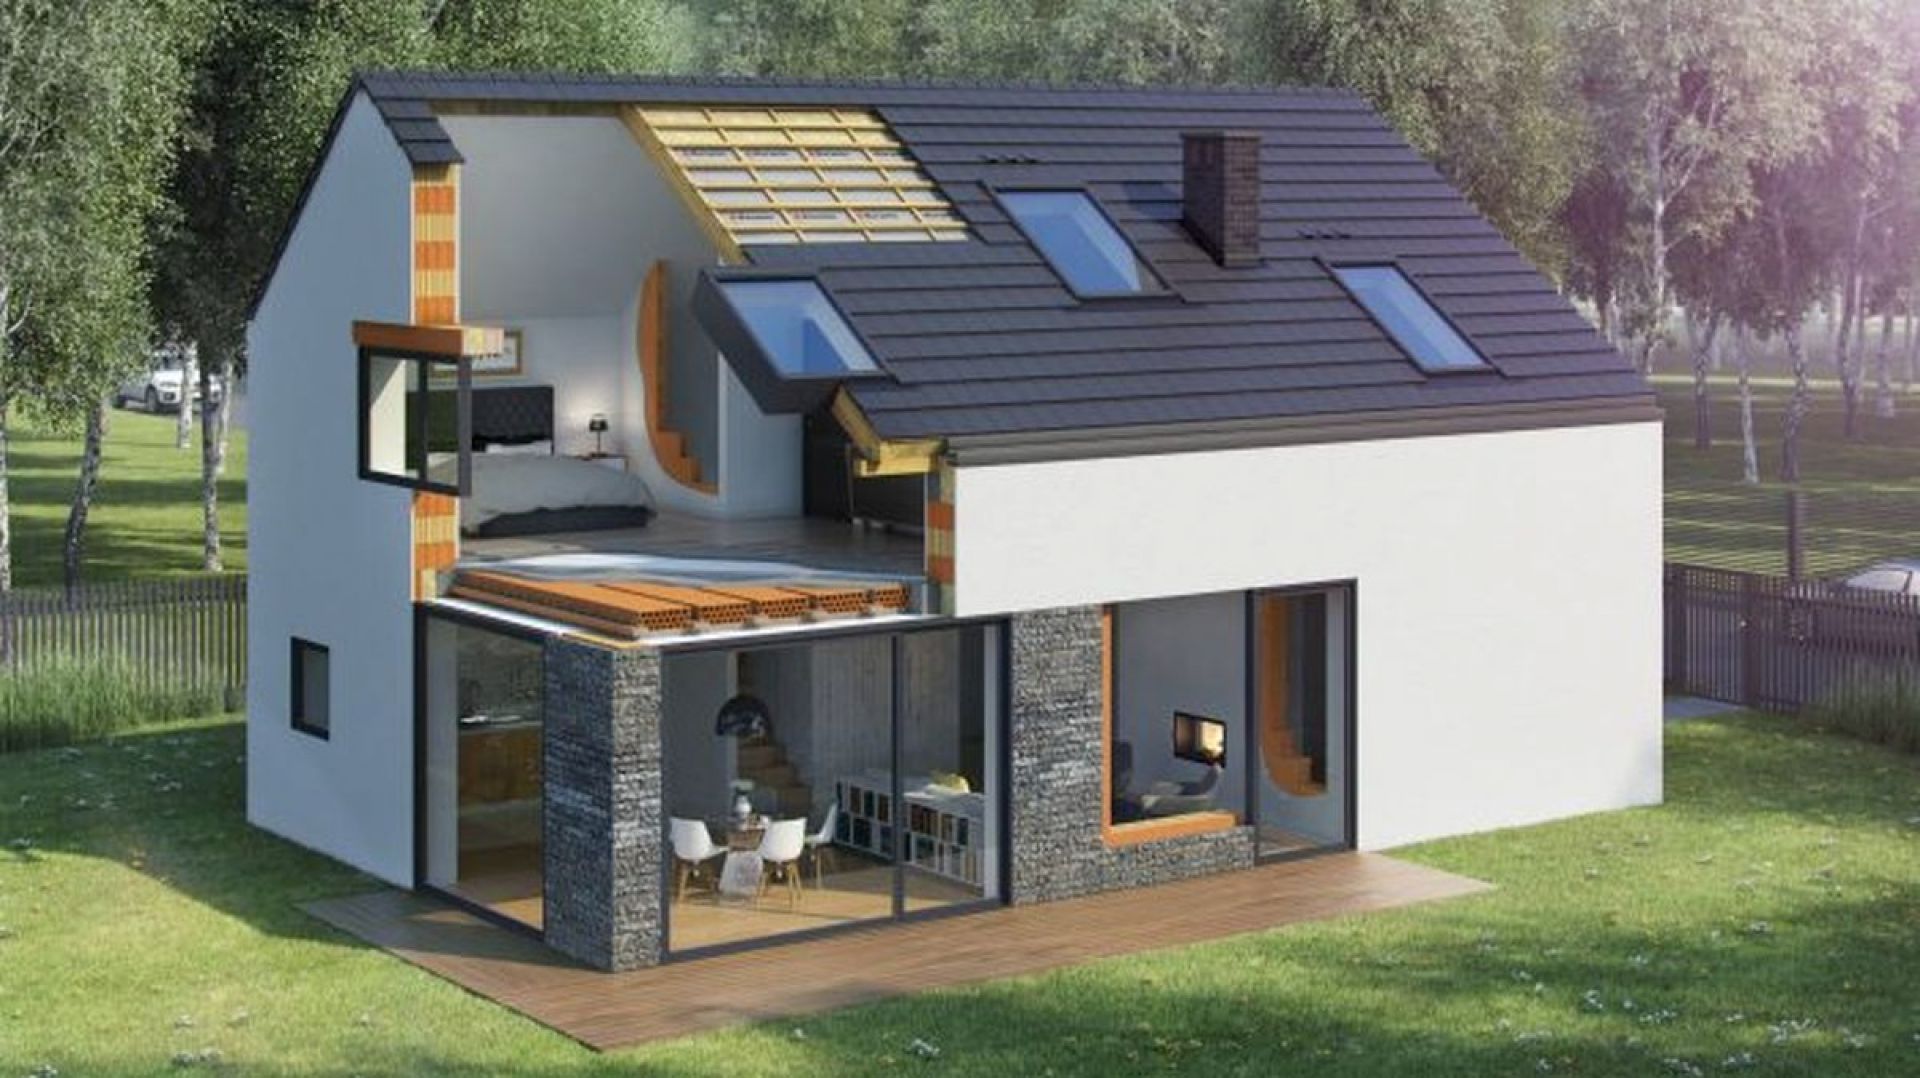 Концепция дома Wienerberger e4 предполагает строительство современного дома из керамики с низким уровнем выбросов, который уже отвечает новым требованиям.  Фото  Винербергер